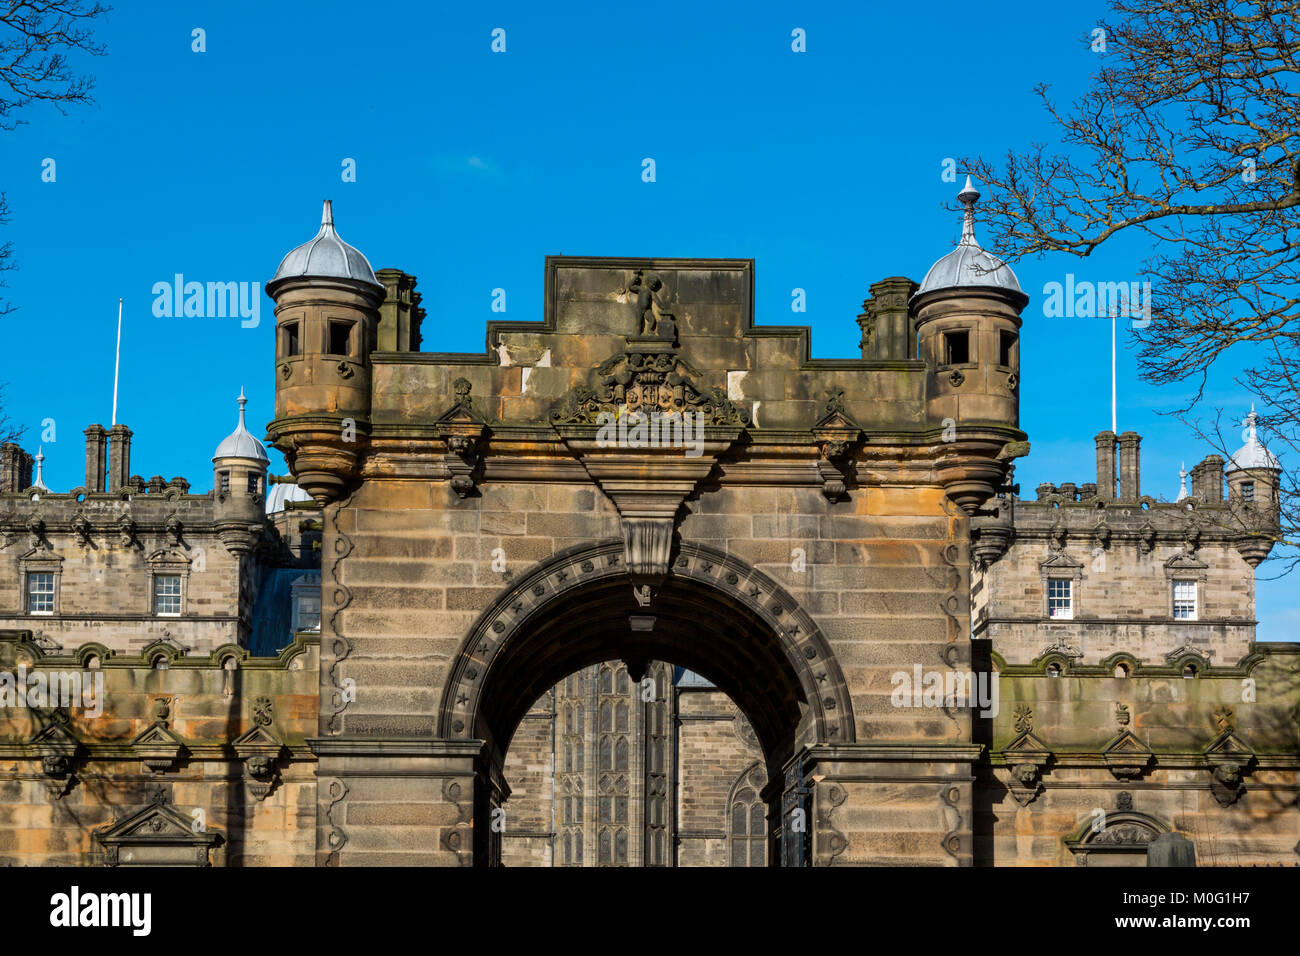 Palace of Holyroodhouse, Edinburgh, Scotland, United Kingdom Stock Photo